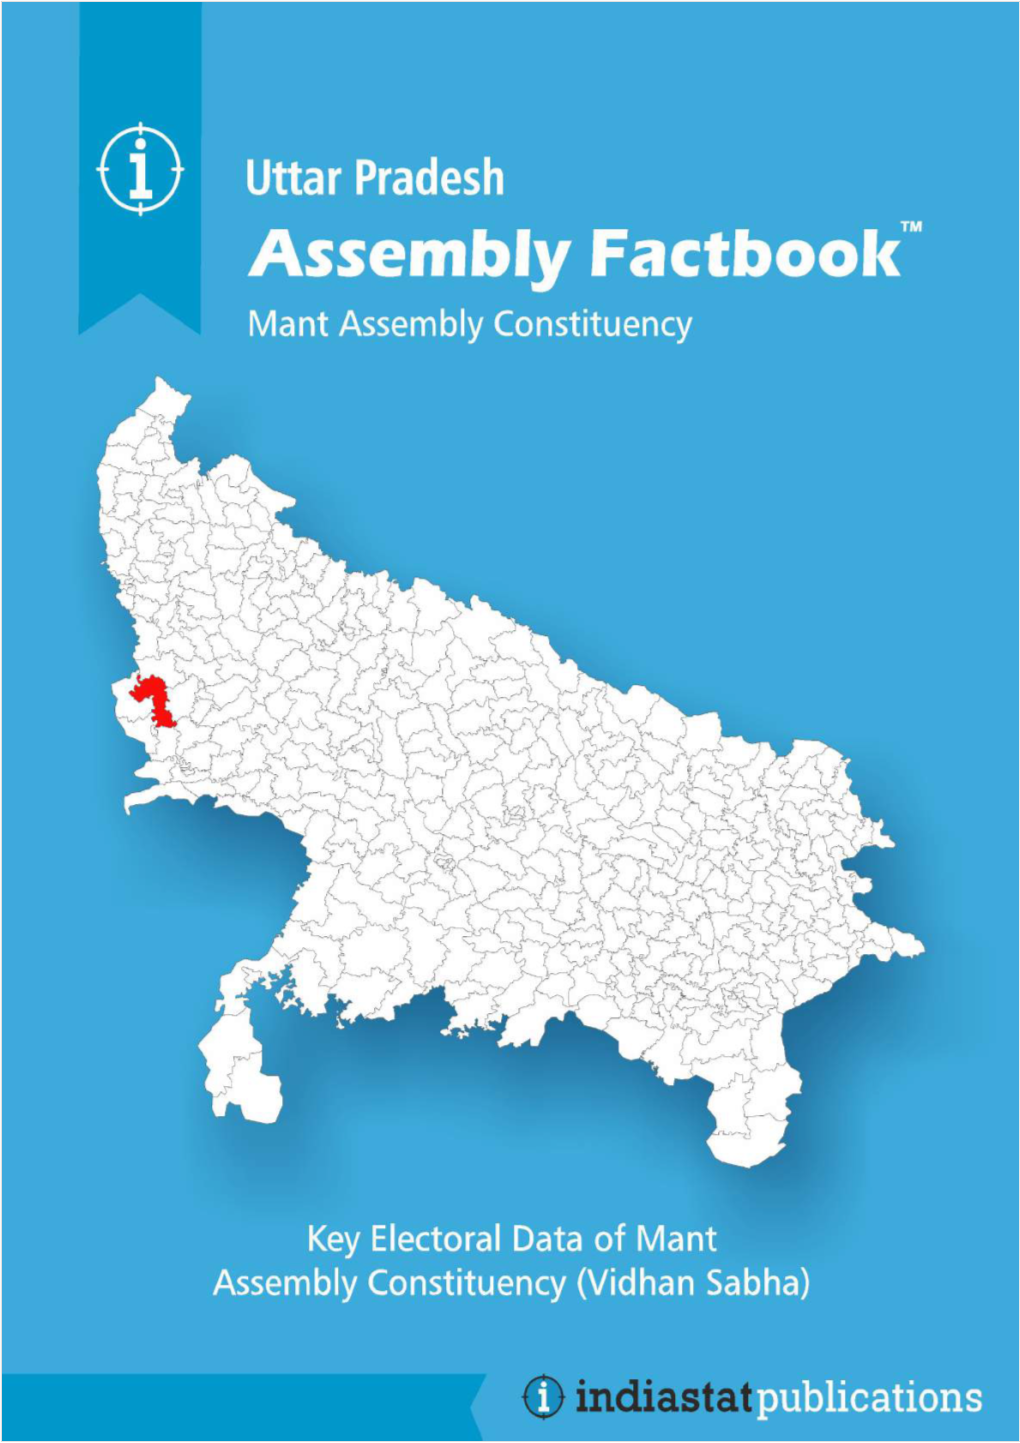 Mant Assembly Uttar Pradesh Factbook